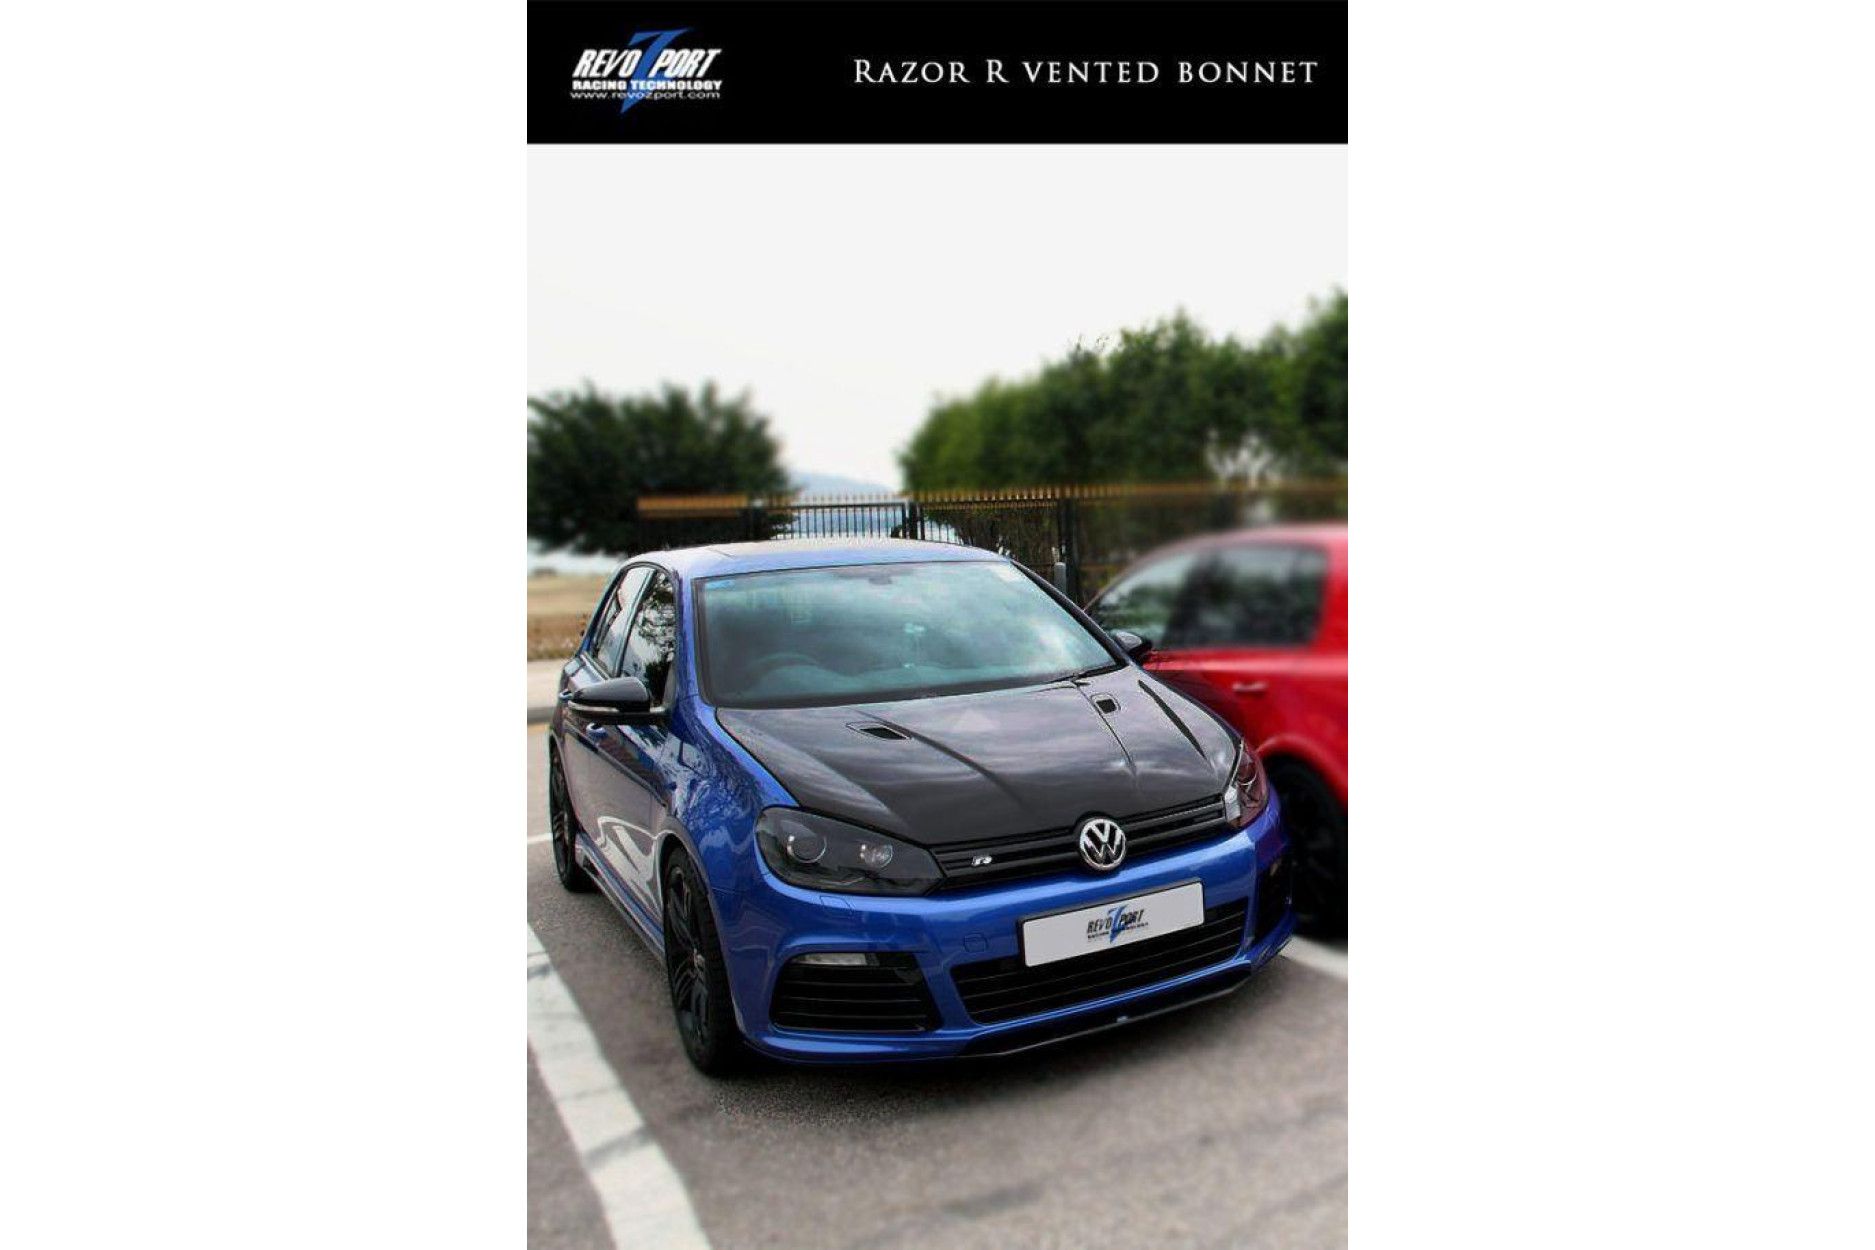 RevoZport Carbon hood for Volkswagen Golf MK6|Golf 6 R "Razor" with vents (8) 